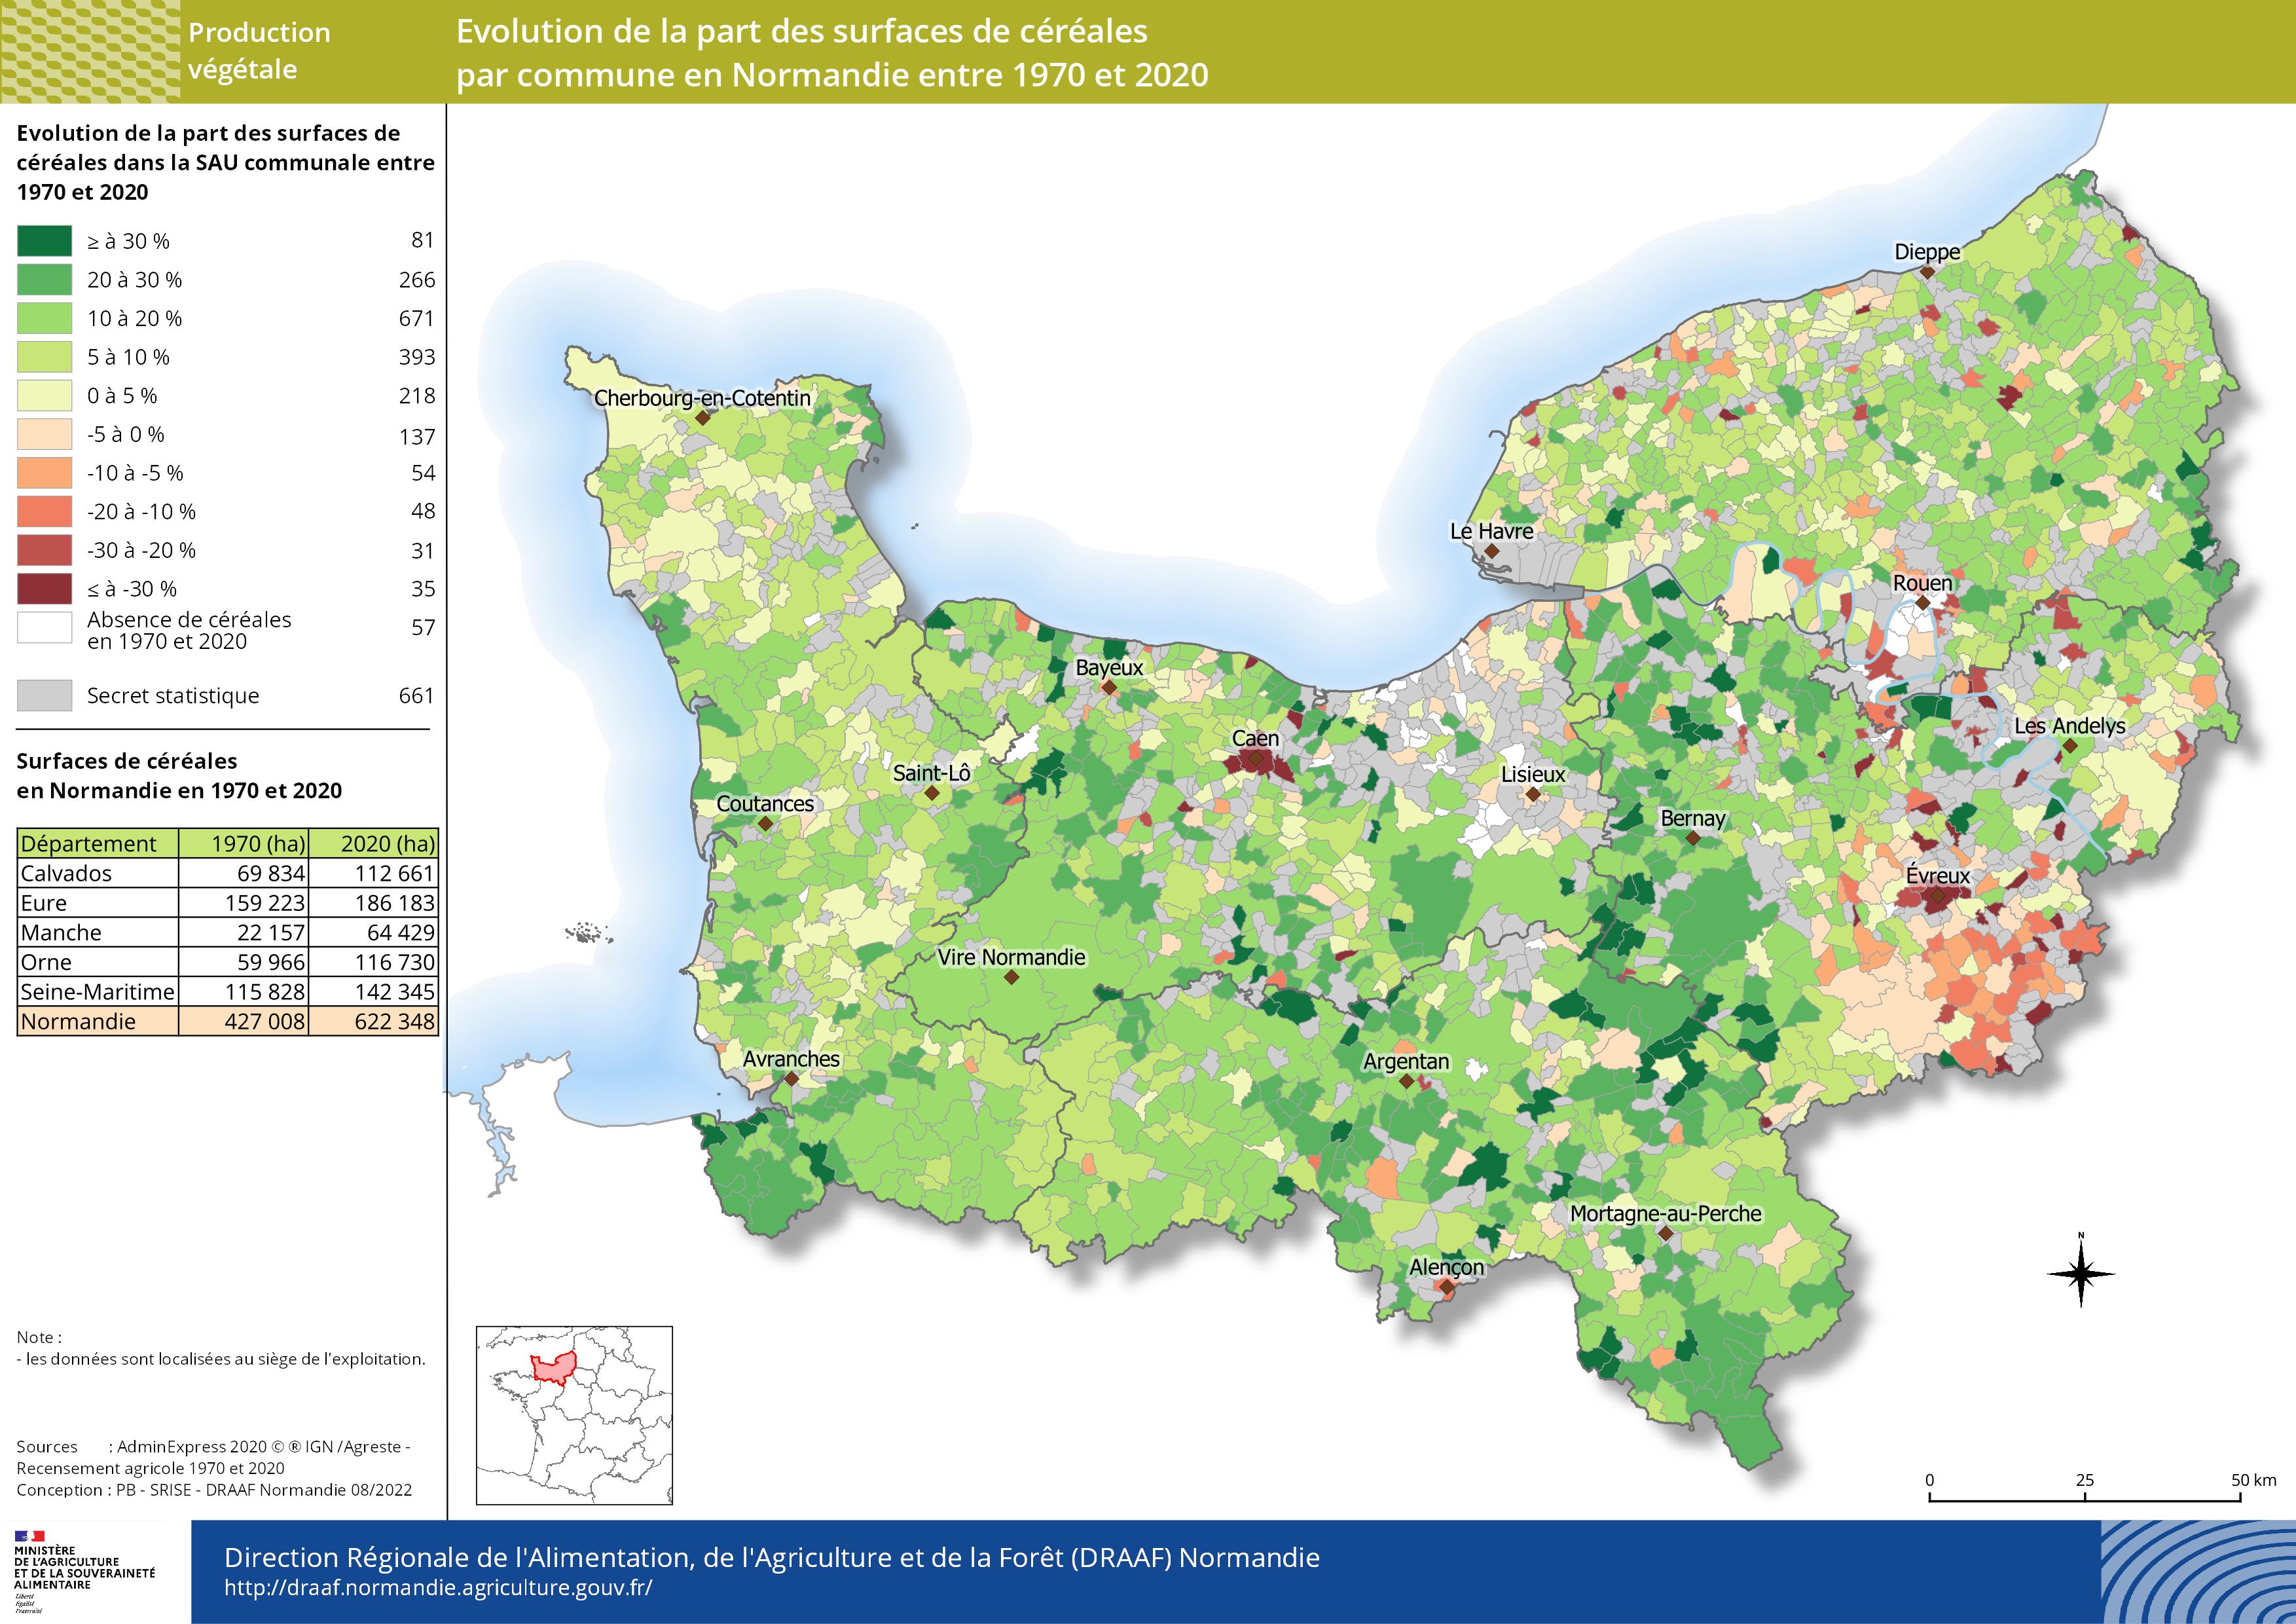 carte représentant l'évolution de la part des surfaces de céréales par commune en Normandie entre 1970 et 2020